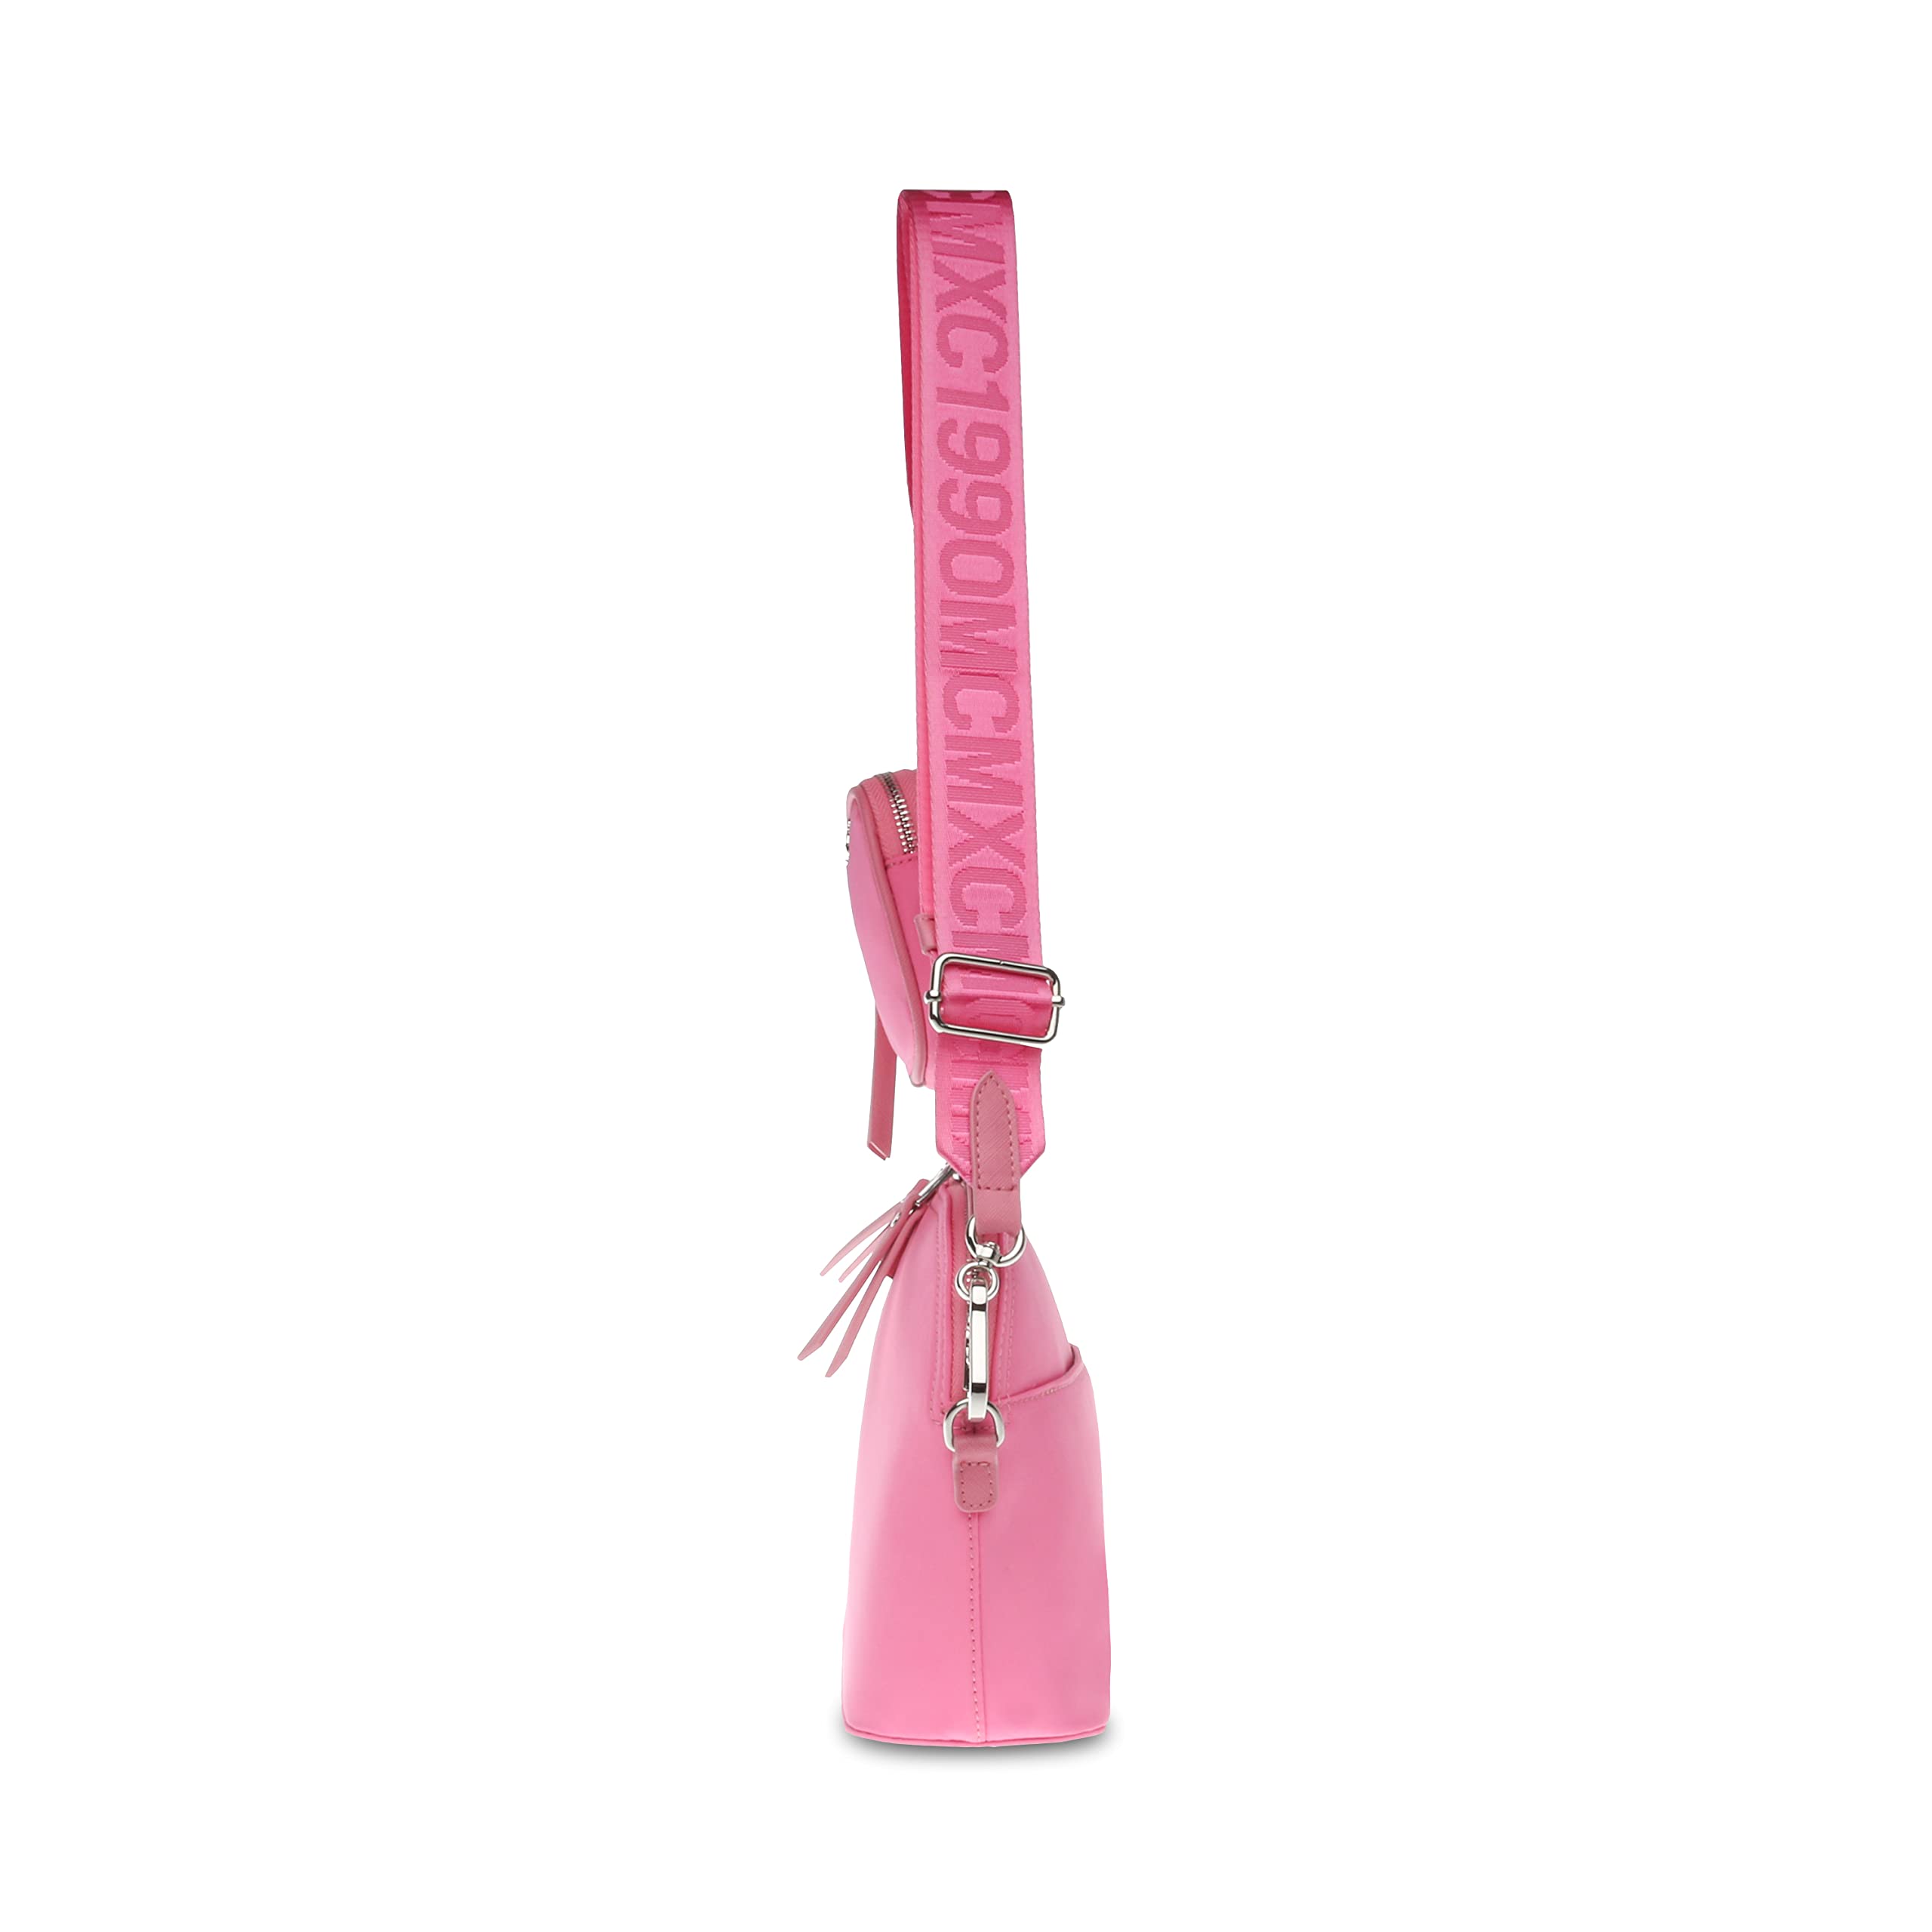 Steve Madden Daren Nylon Dome Crossbody Bag, Light Pink